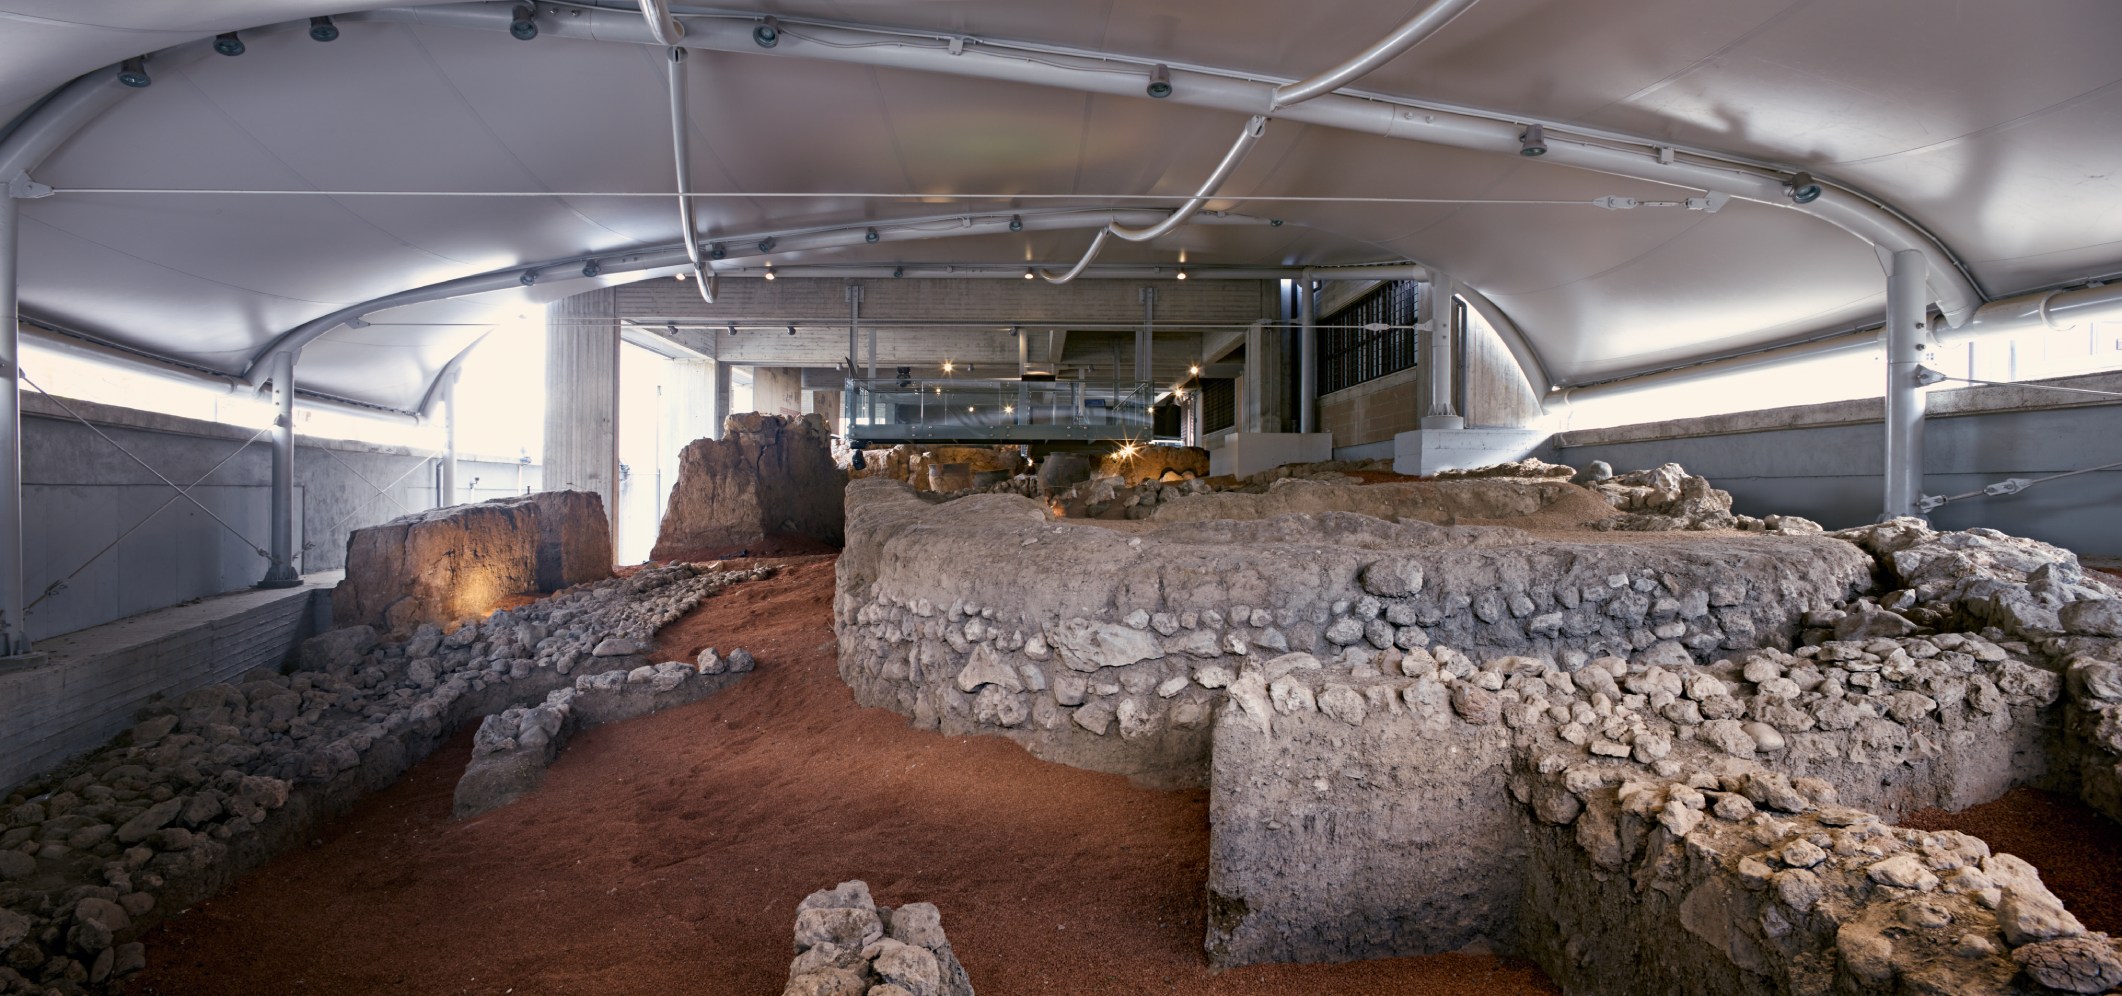 Ανάδειξη και προστασία αρχαιολογικού χώρου στο Μουσείο της Θήβας